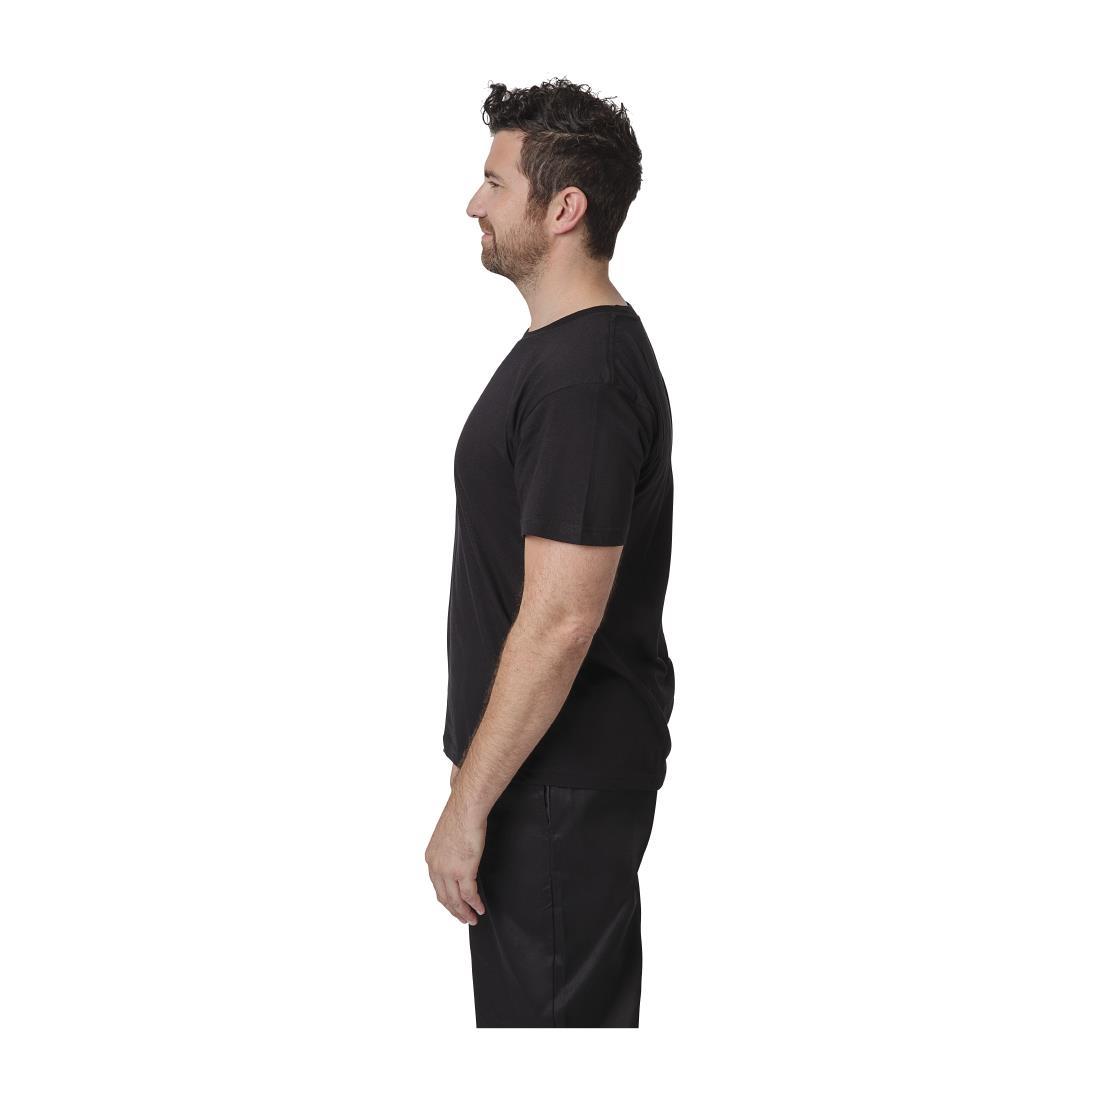 Unisex Chef T-Shirt Black M - A295-M  - 4